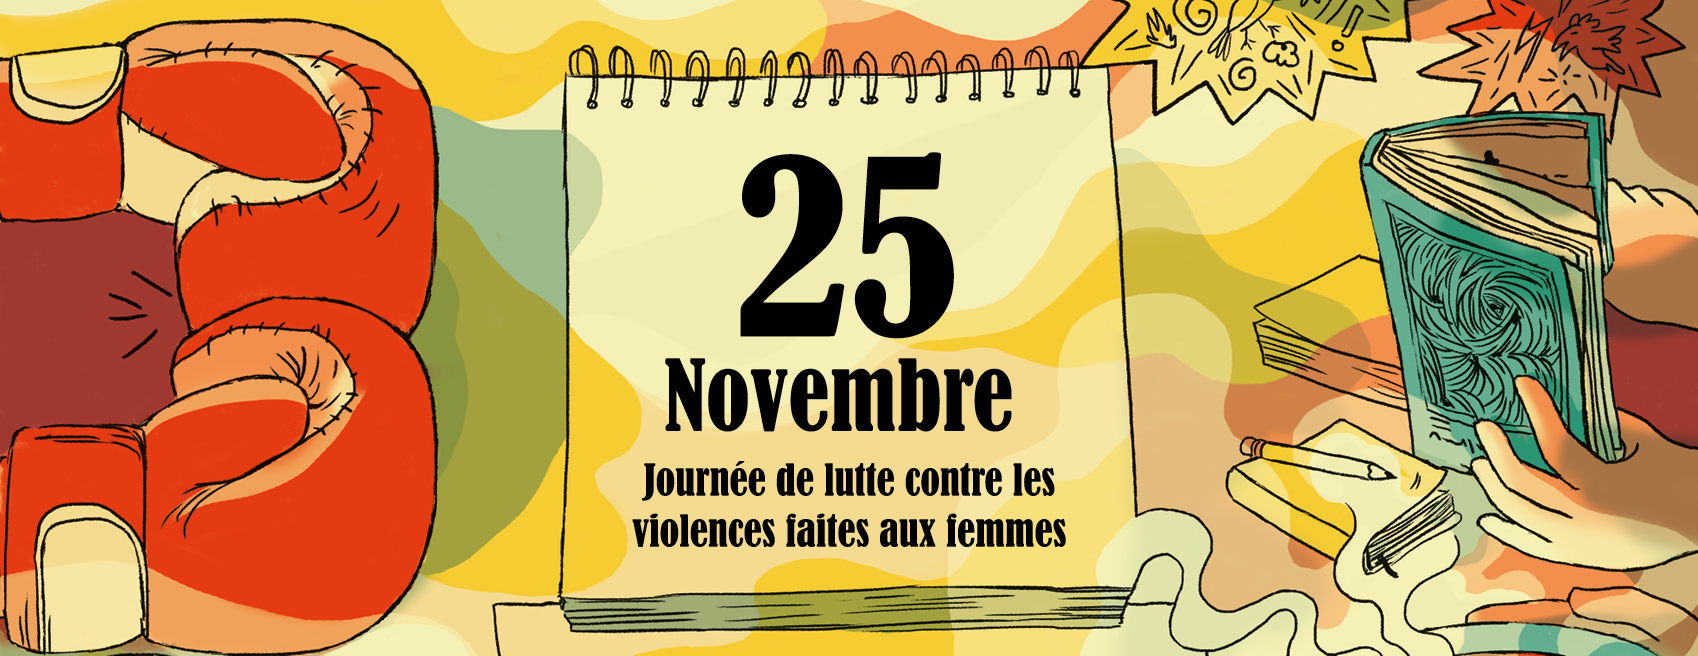 25 novembre, journée de lutte contre les violences faites aux femmes